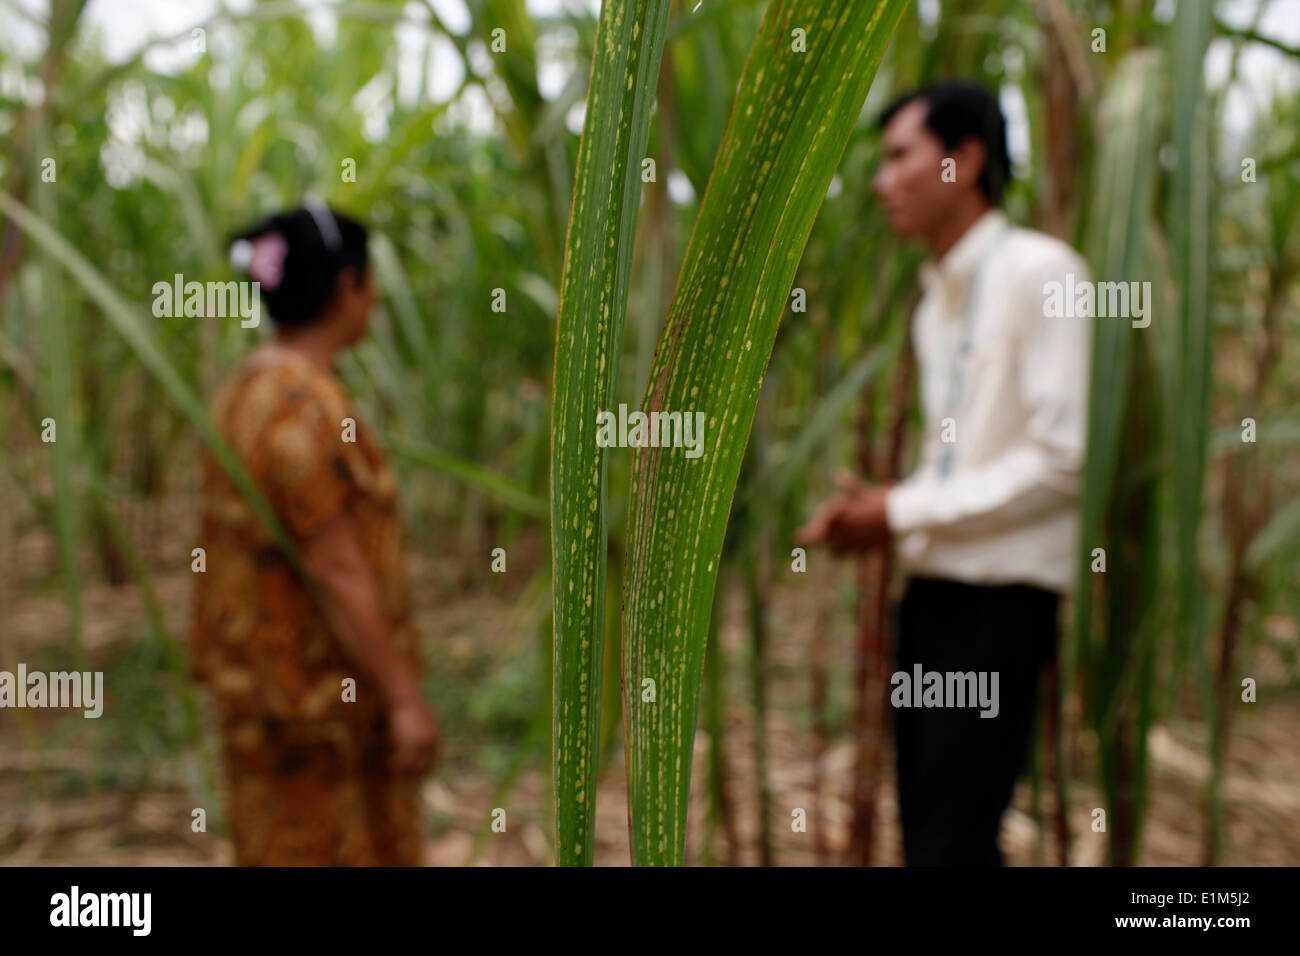 TPC client di microfinanza Le• Chun nella sua piantagione di canna da zucchero con prestito officer Vutha Maont Foto Stock